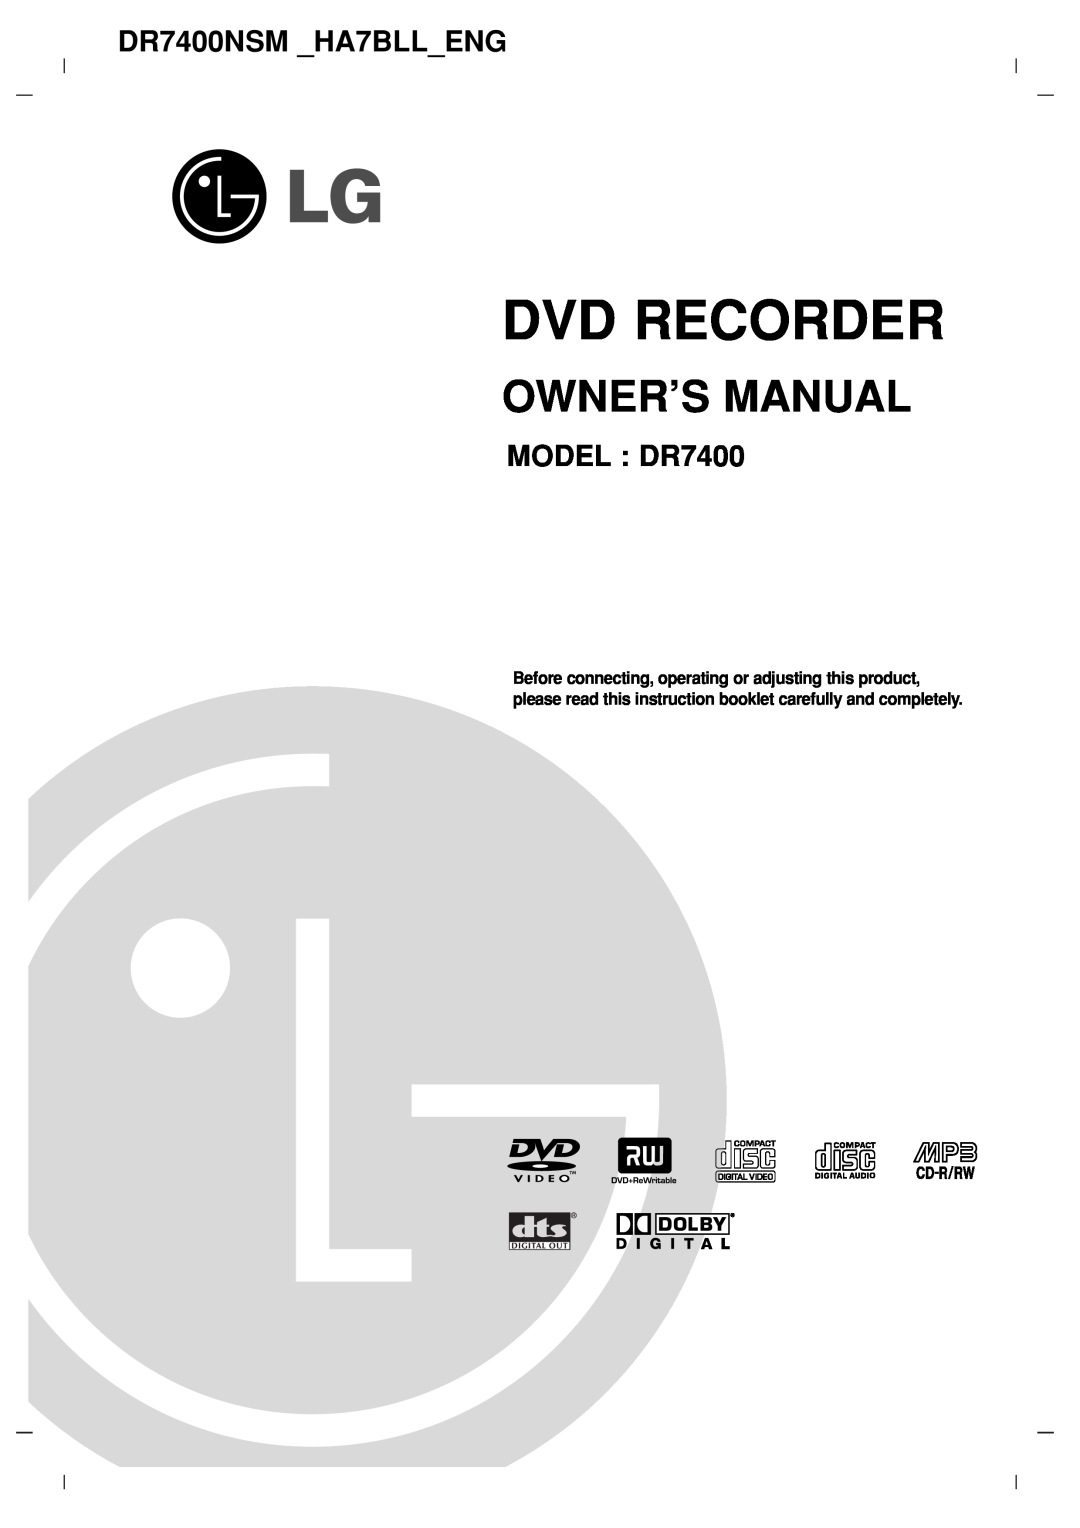 LG Electronics owner manual Owner’S Manual, Dvd Recorder, DR7400NSM HA7BLLENG, MODEL DR7400 